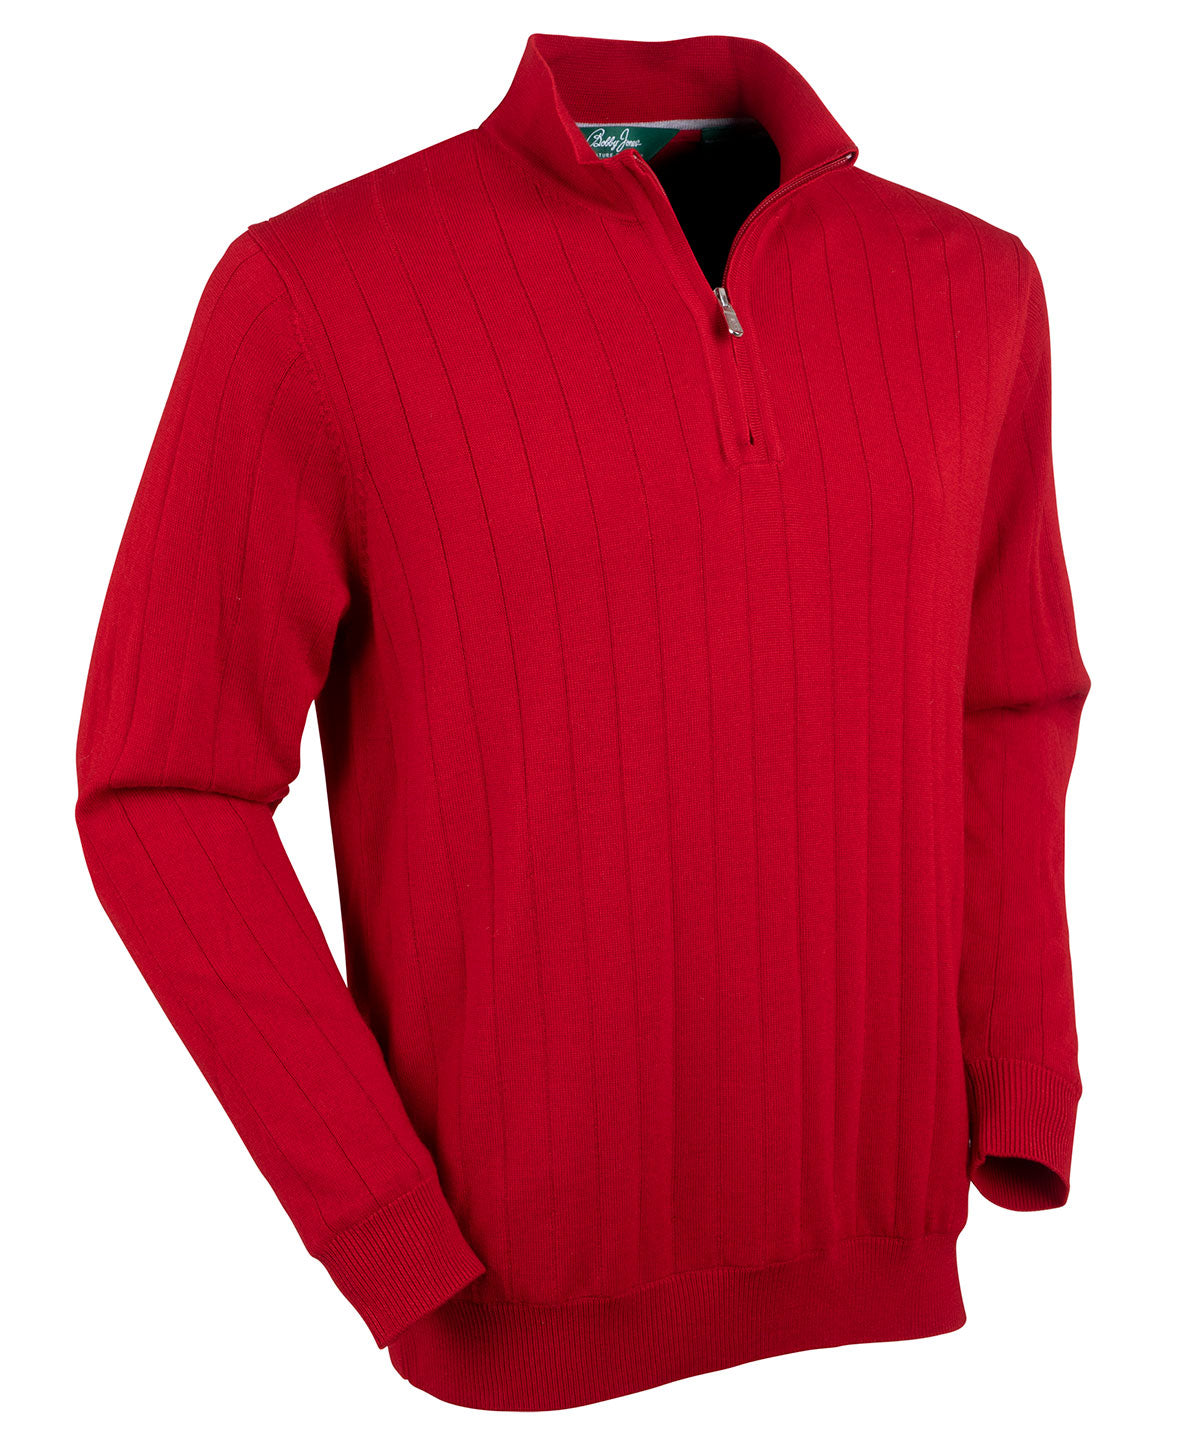 Signature Merino Quarter-Zip Mock Neck Sweater